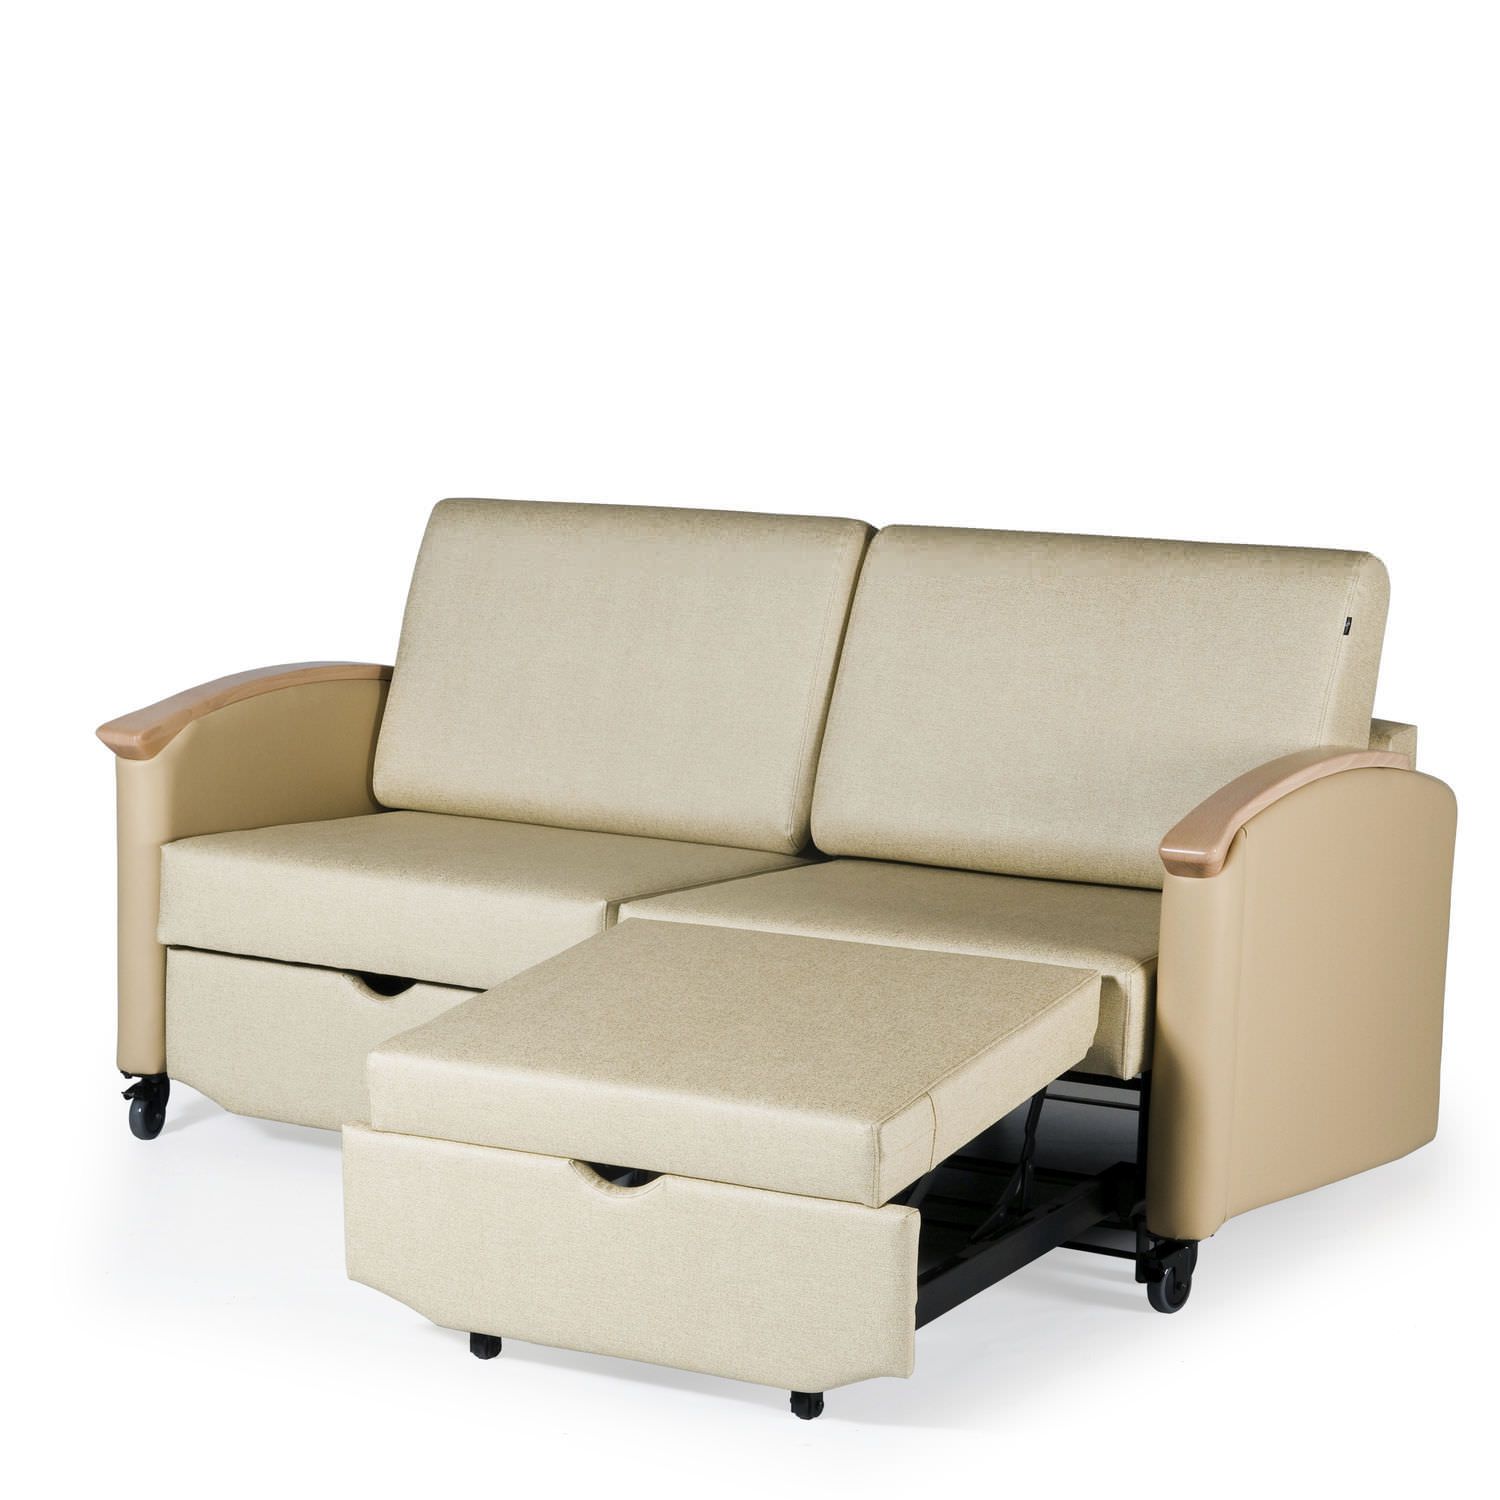 Healthcare facility sofa-bed / two seater Harmony HA2821L La-Z-Boy Contract Furniture